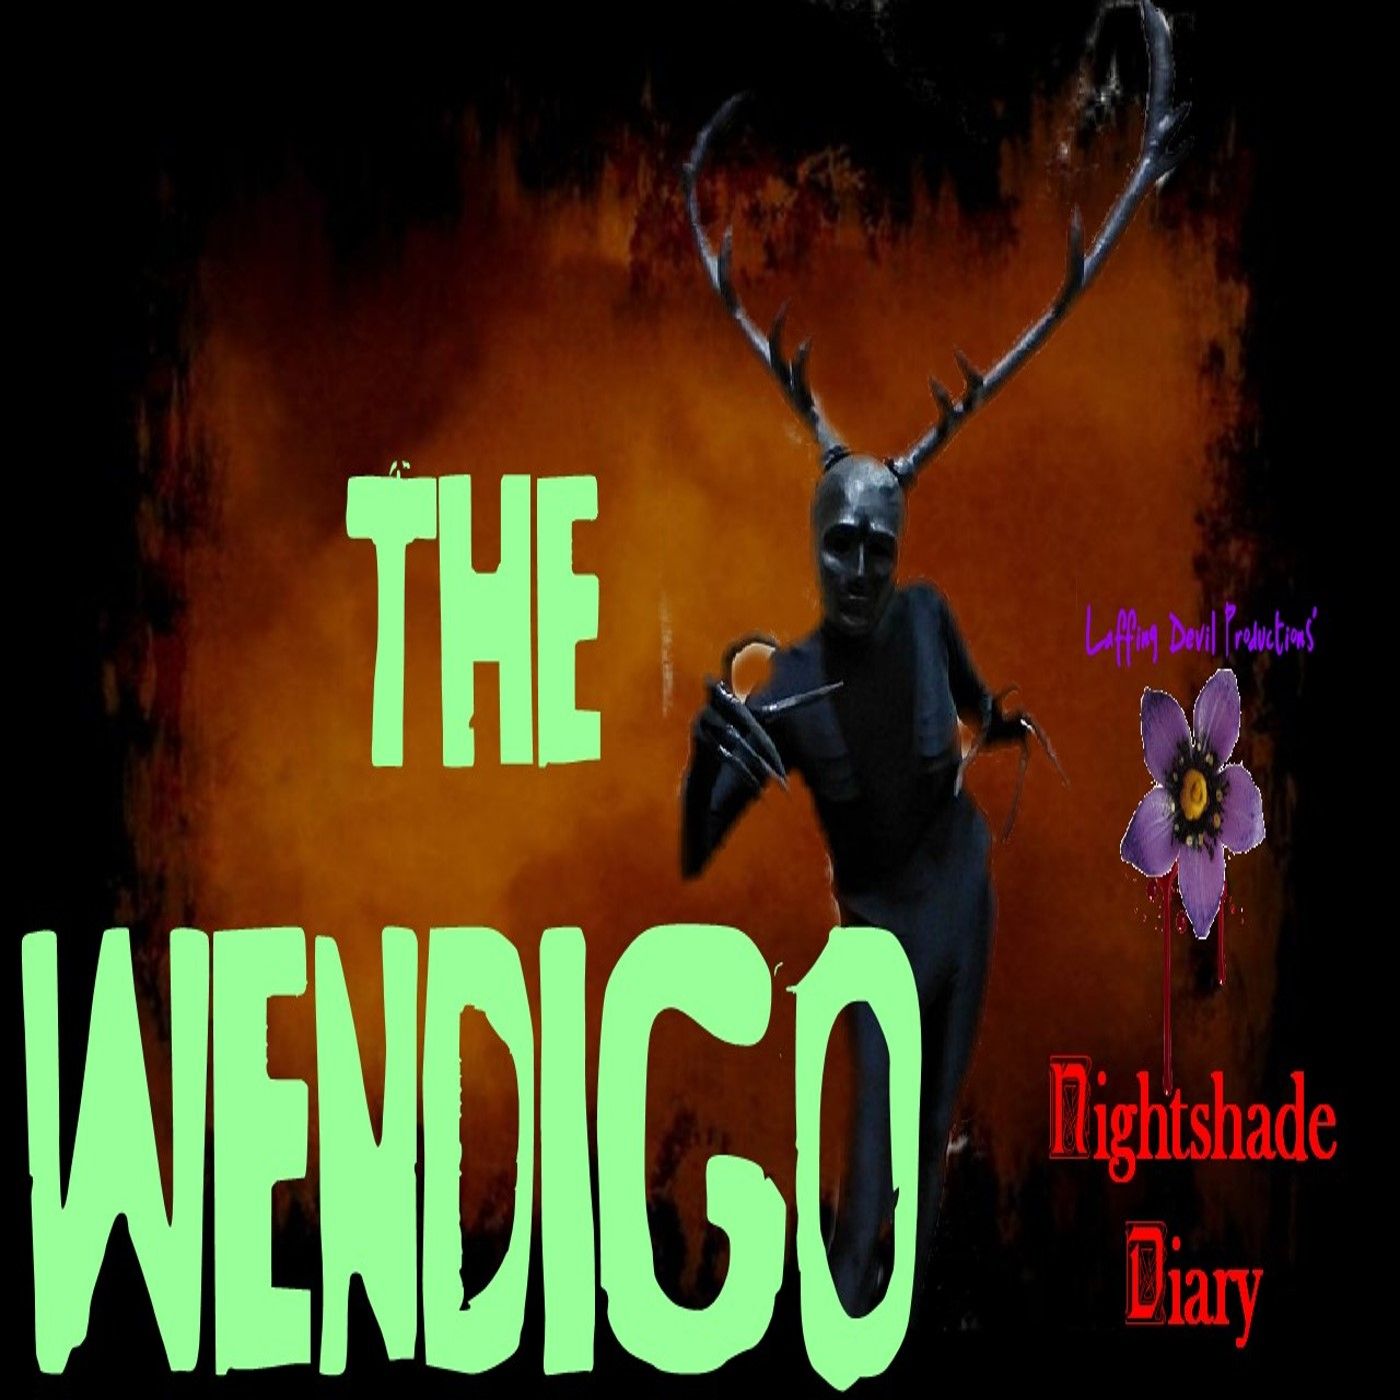 THE WENDIGO | ALGERNON BLACKWOOD | NIGHTSHADE DIARY PODCAST